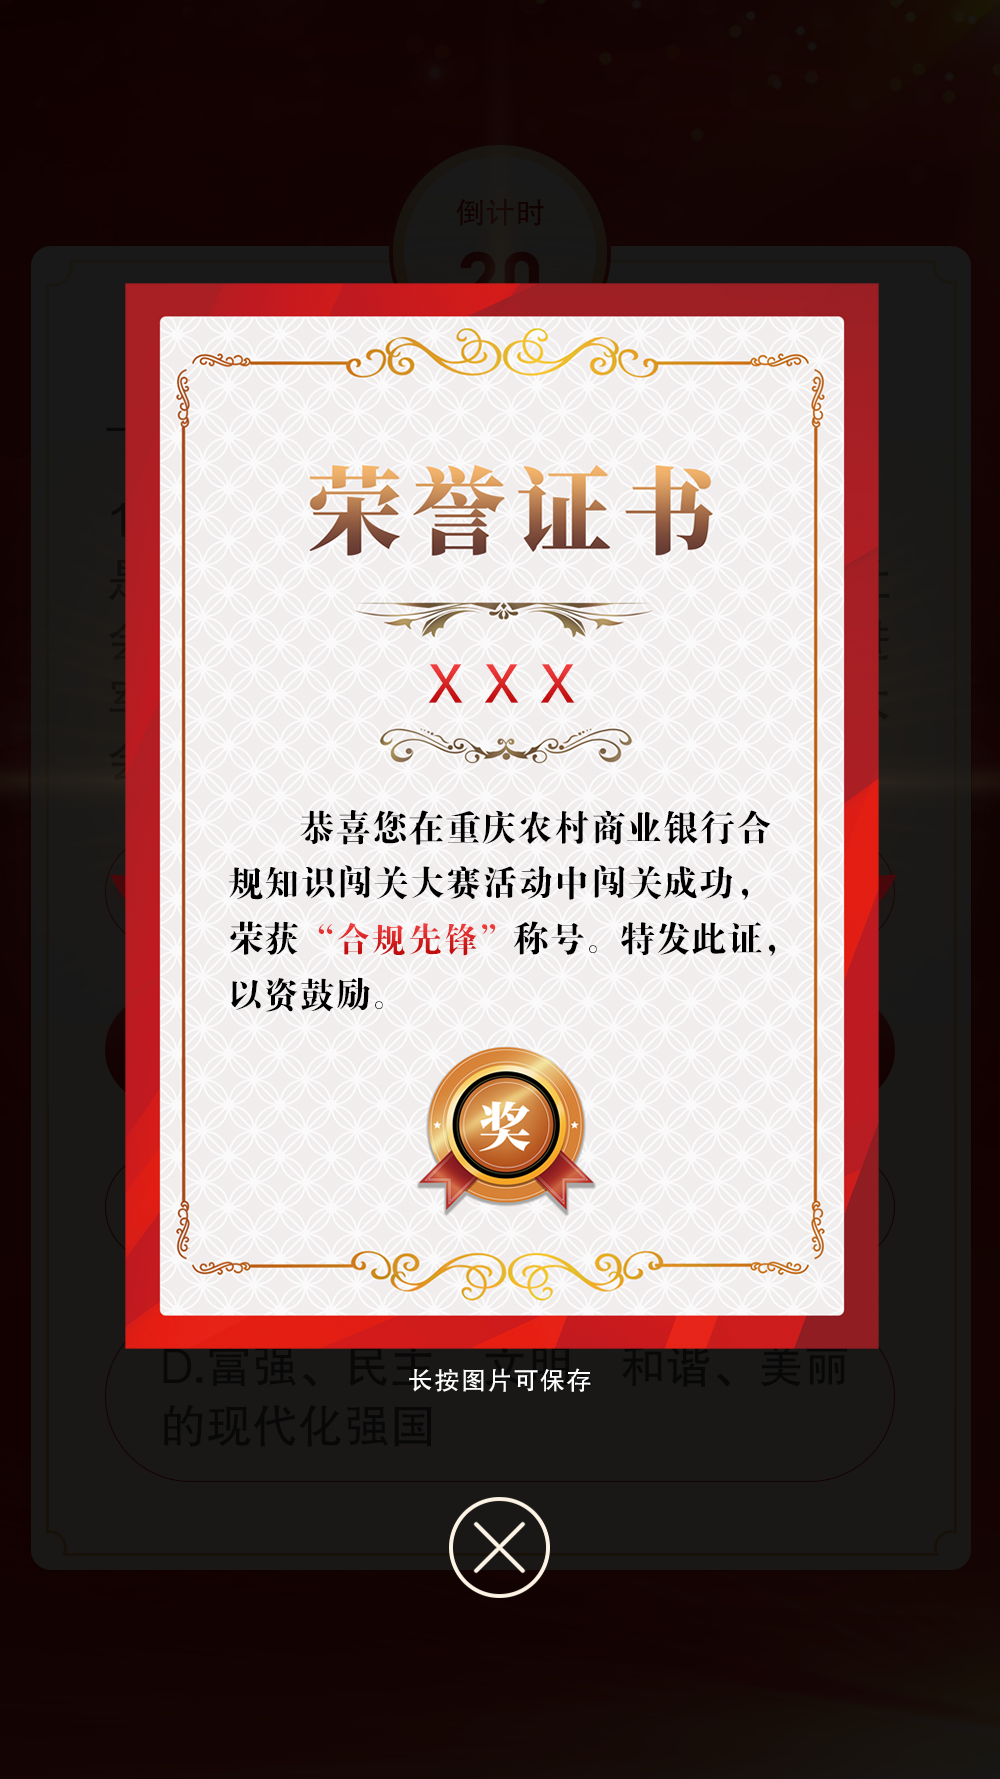 重庆农商行为闯关成功的员工颁发“合规先锋”电子荣誉证书。重庆农商行供图 华龙网发